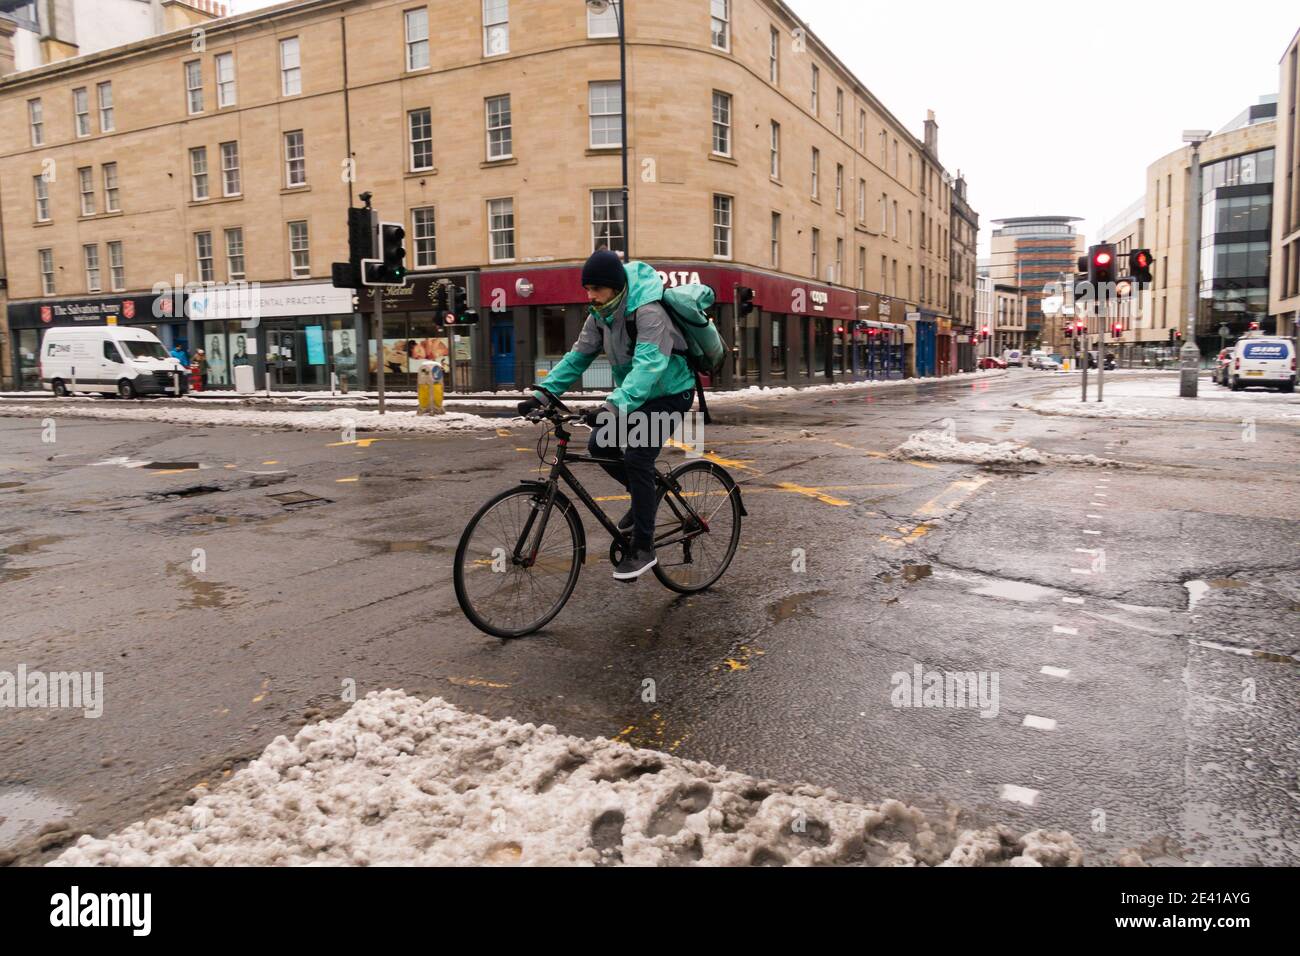 Deliveroo livraison cycliste, le vélo la mauvaise voie dans le centre-ville d'Édimbourg, Écosse, Royaume-Uni. Banque D'Images